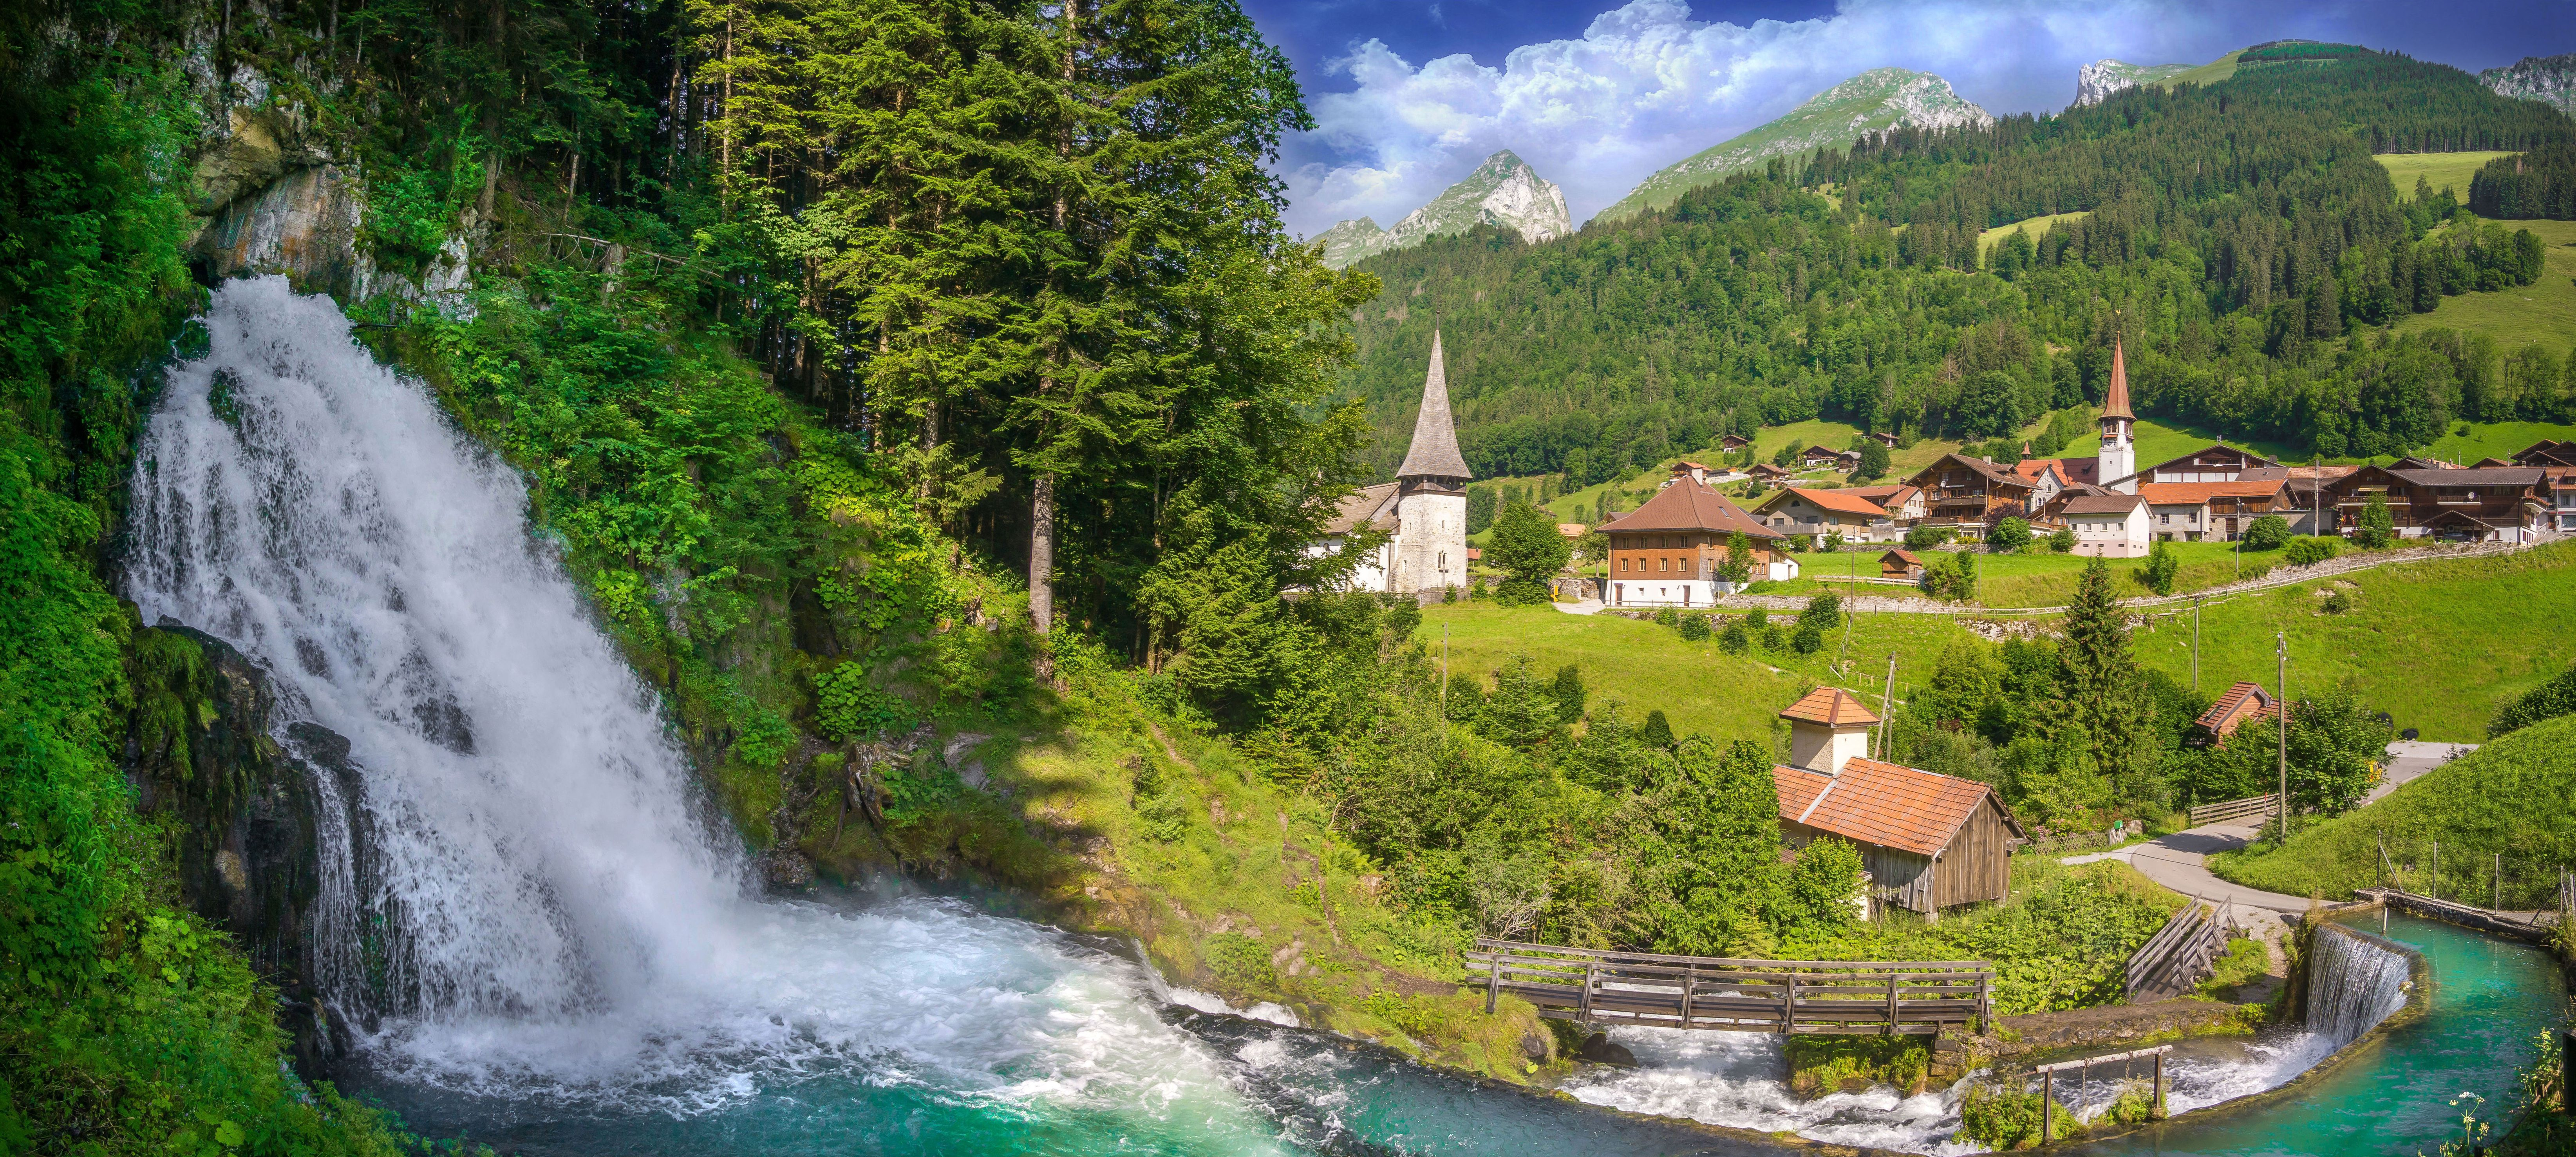 免费照片瑞士瀑布旁的一个村庄